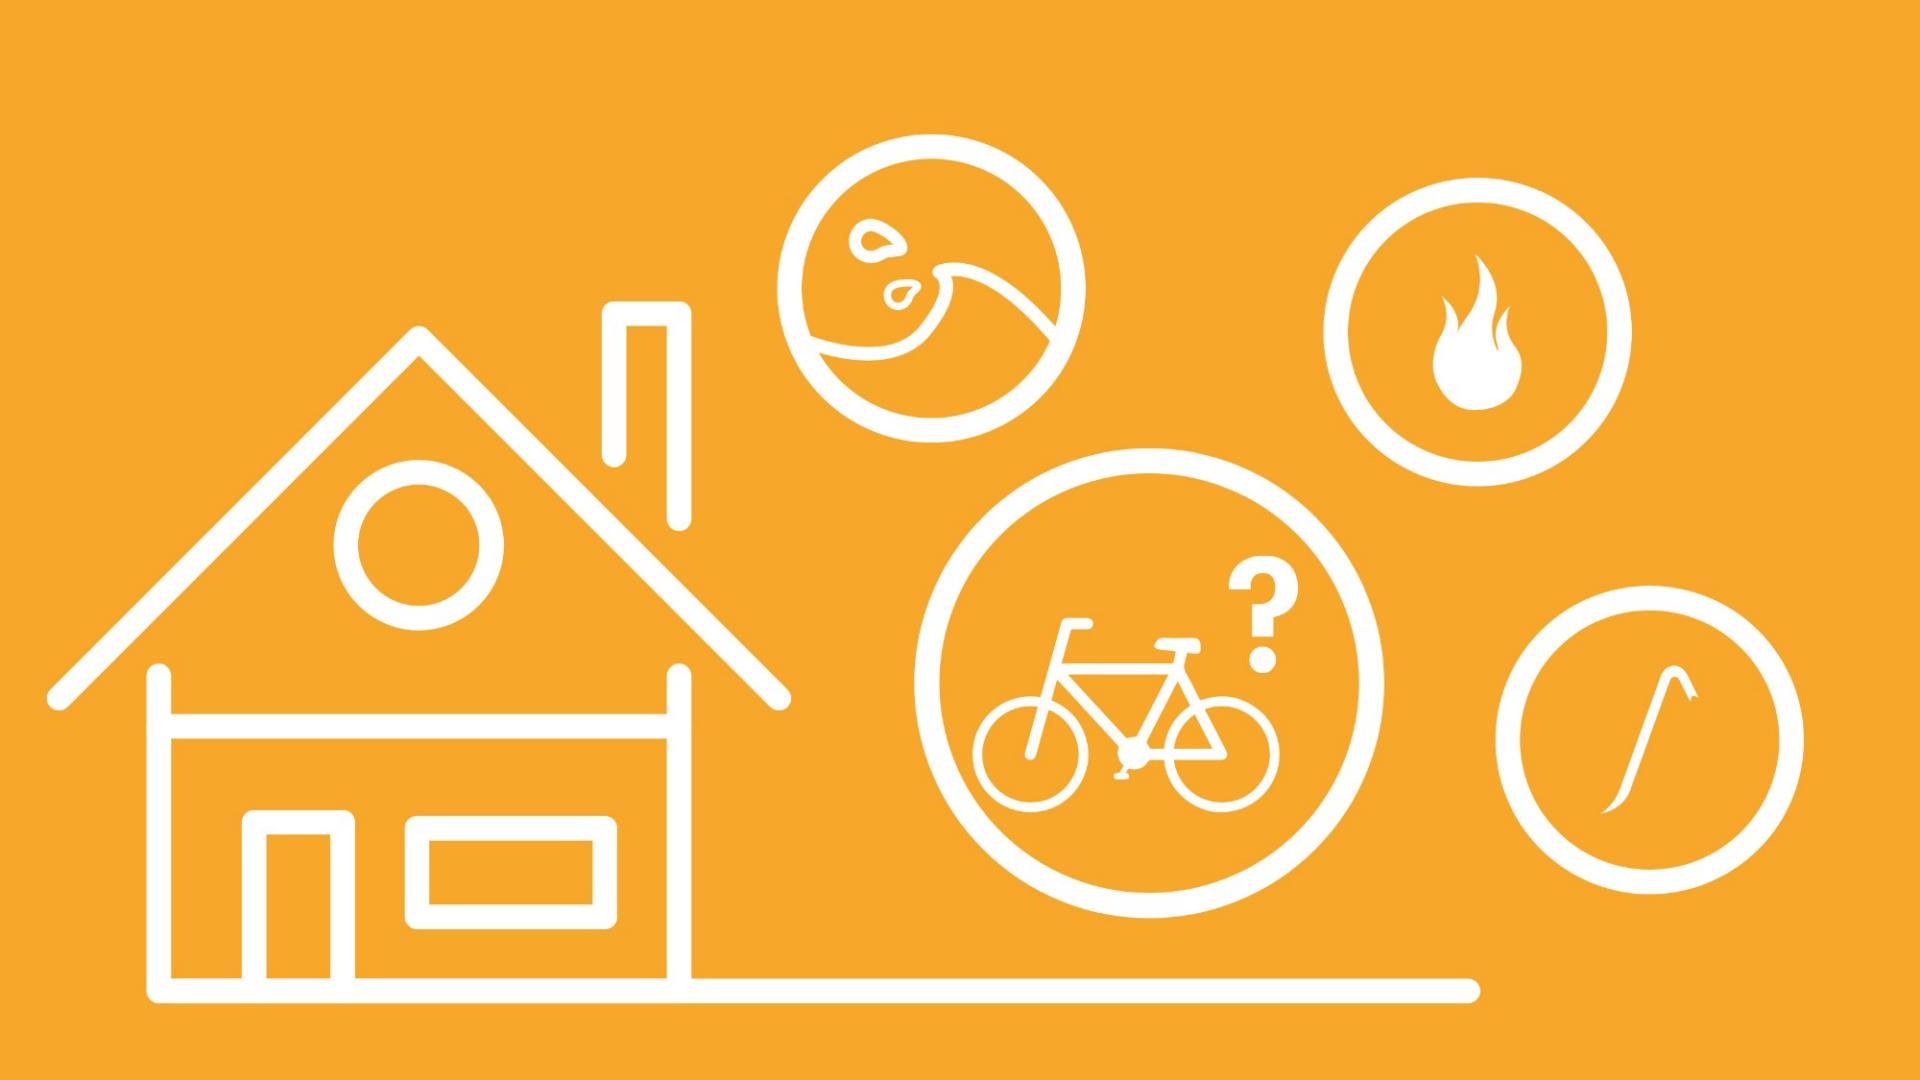 Unter einem Haus und einem Fahrrad ist eine Hand abgebildet, um darzustellen, ob sich eine Hausratversicherung für das Fahrrad lohnt.